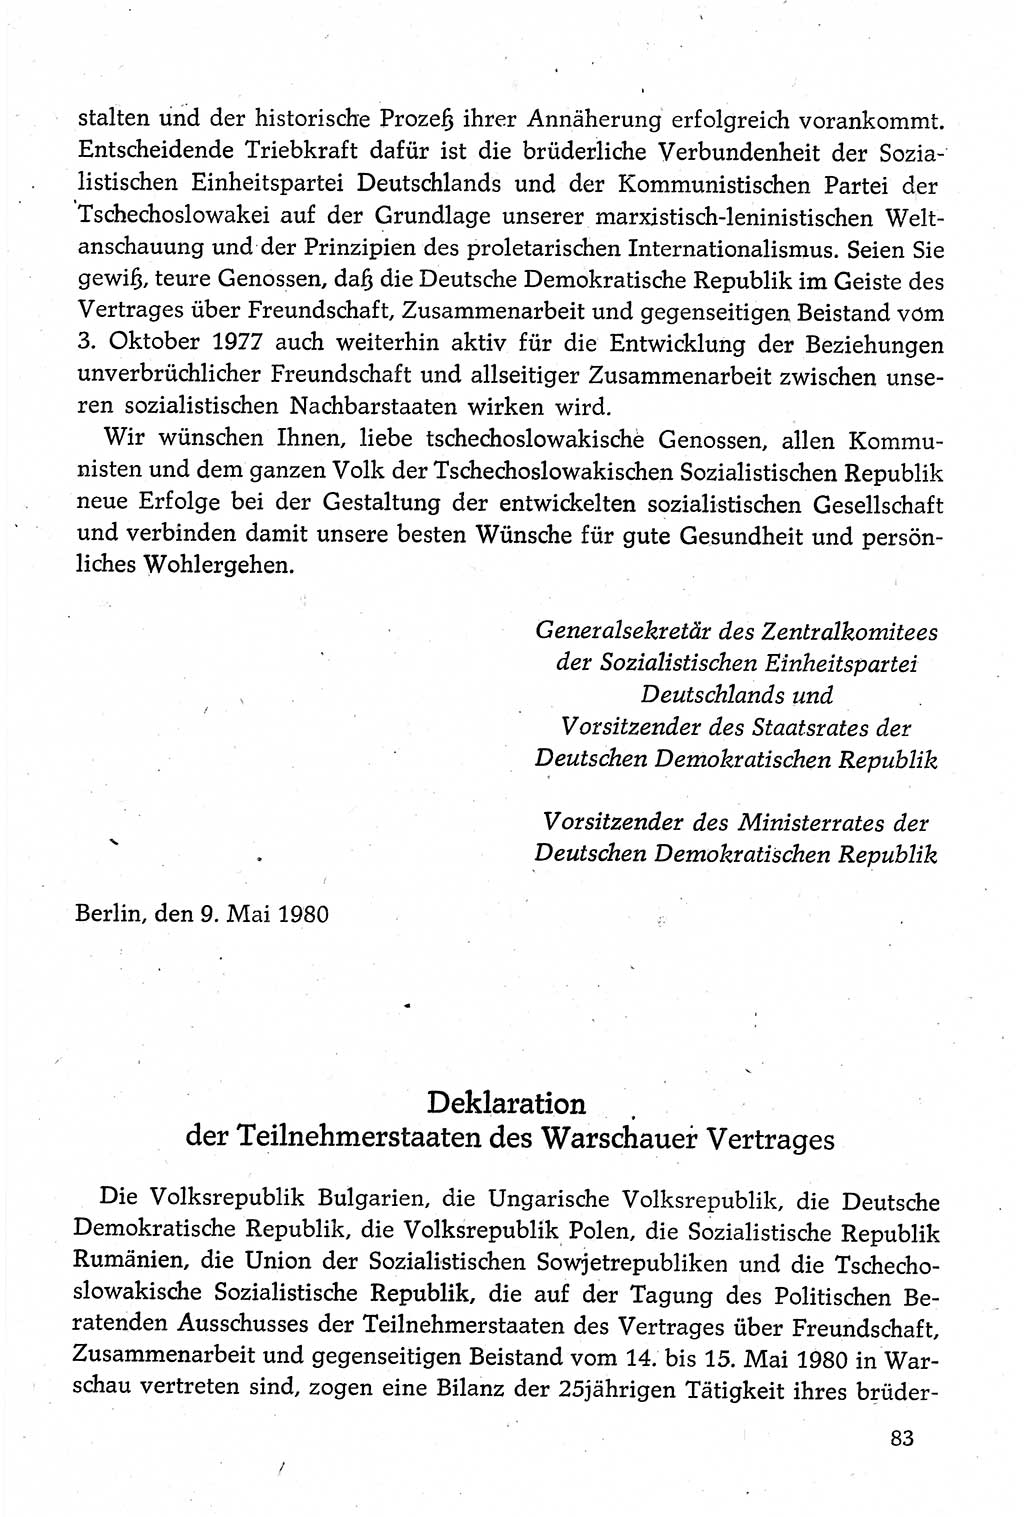 Dokumente der Sozialistischen Einheitspartei Deutschlands (SED) [Deutsche Demokratische Republik (DDR)] 1980-1981, Seite 83 (Dok. SED DDR 1980-1981, S. 83)